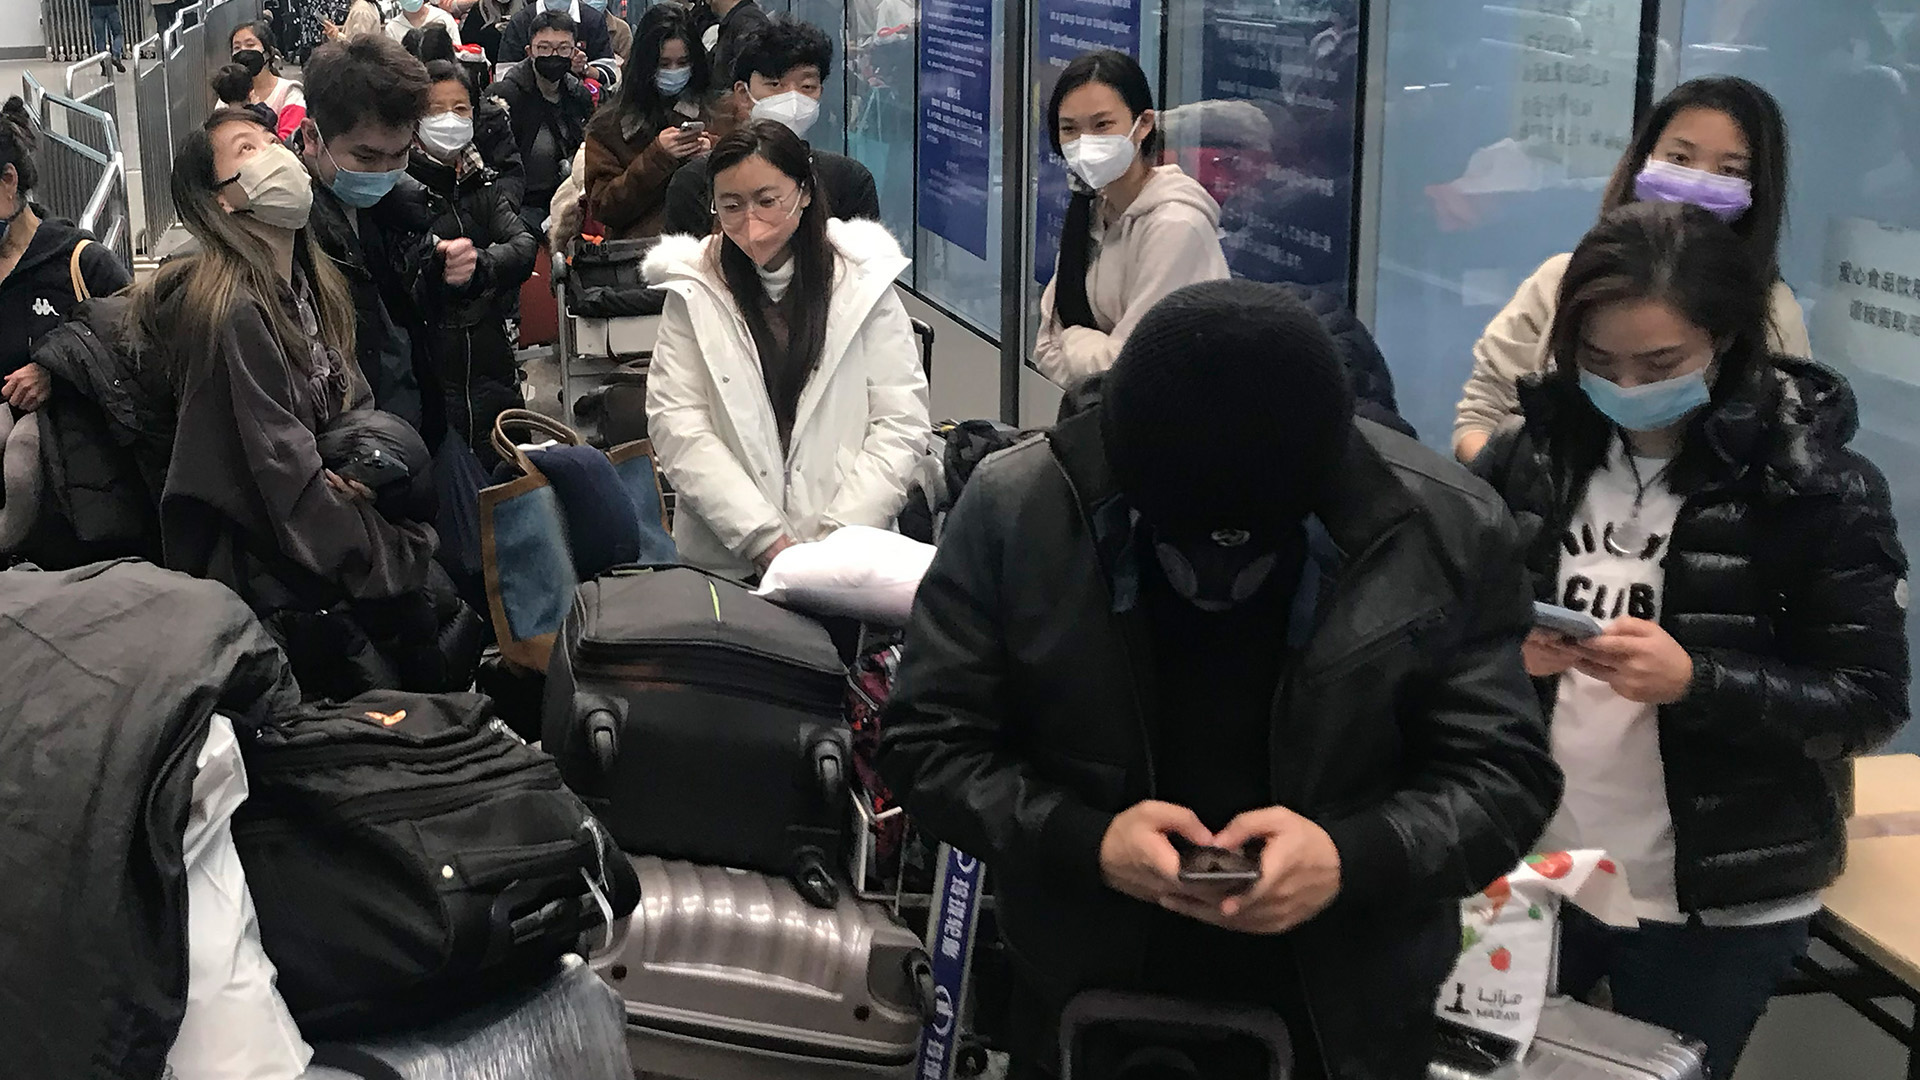 Ankommende Reisende warten auf Busse, um vom Flughafen Guangzhou Baiyun zu Quarantäne-Hotels und -Einrichtungen zu gelangen. | AP